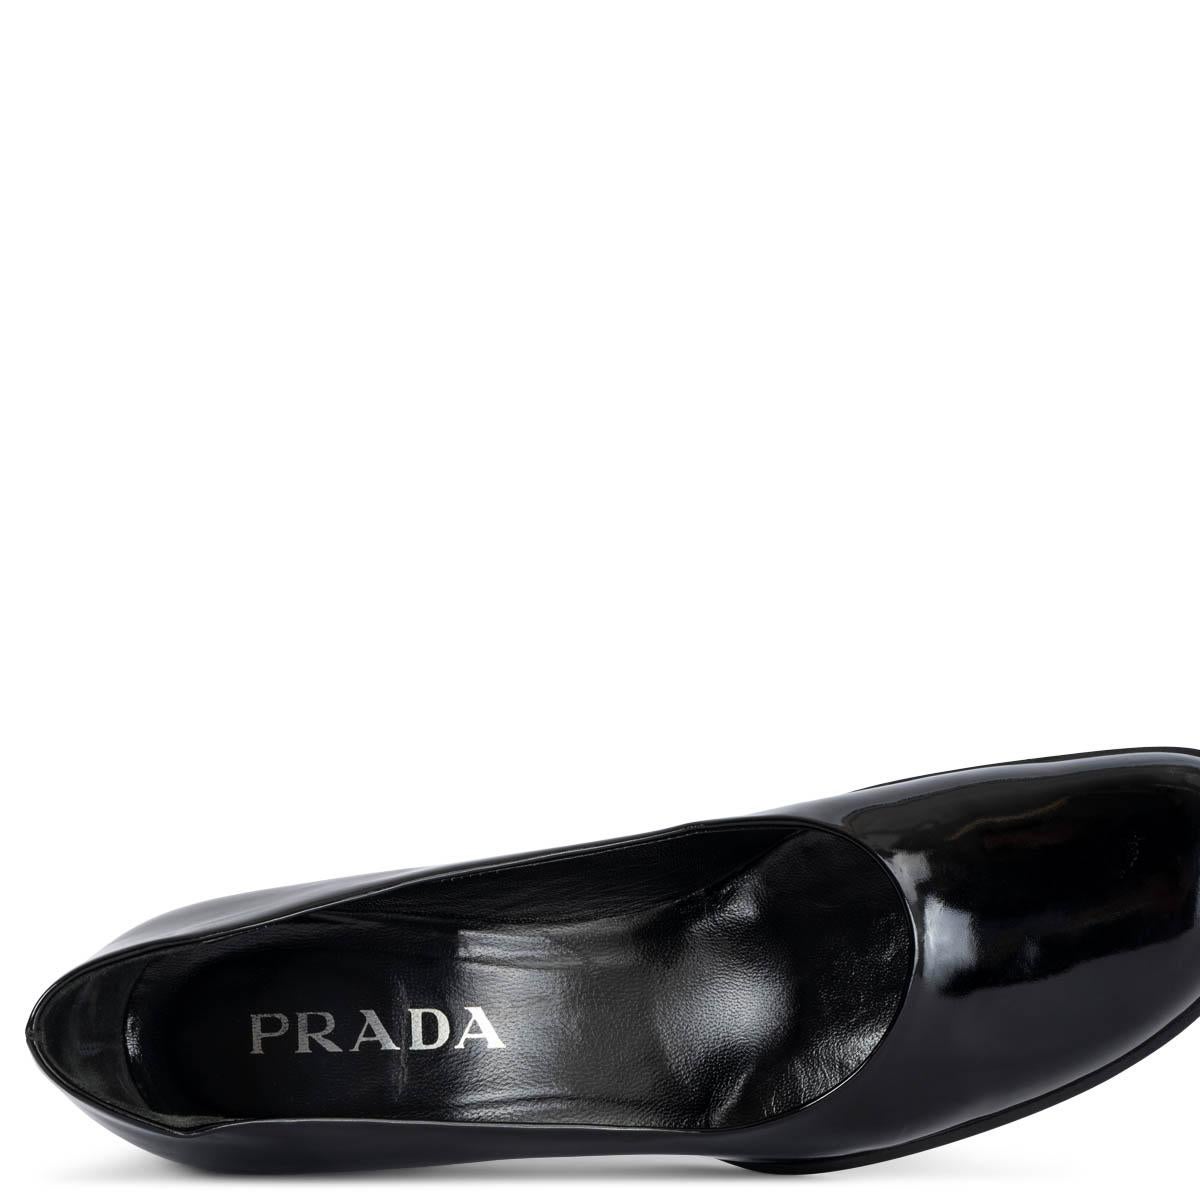 PRADA black patent leather VINTAGE Pumps Shoes 37.5 For Sale 4